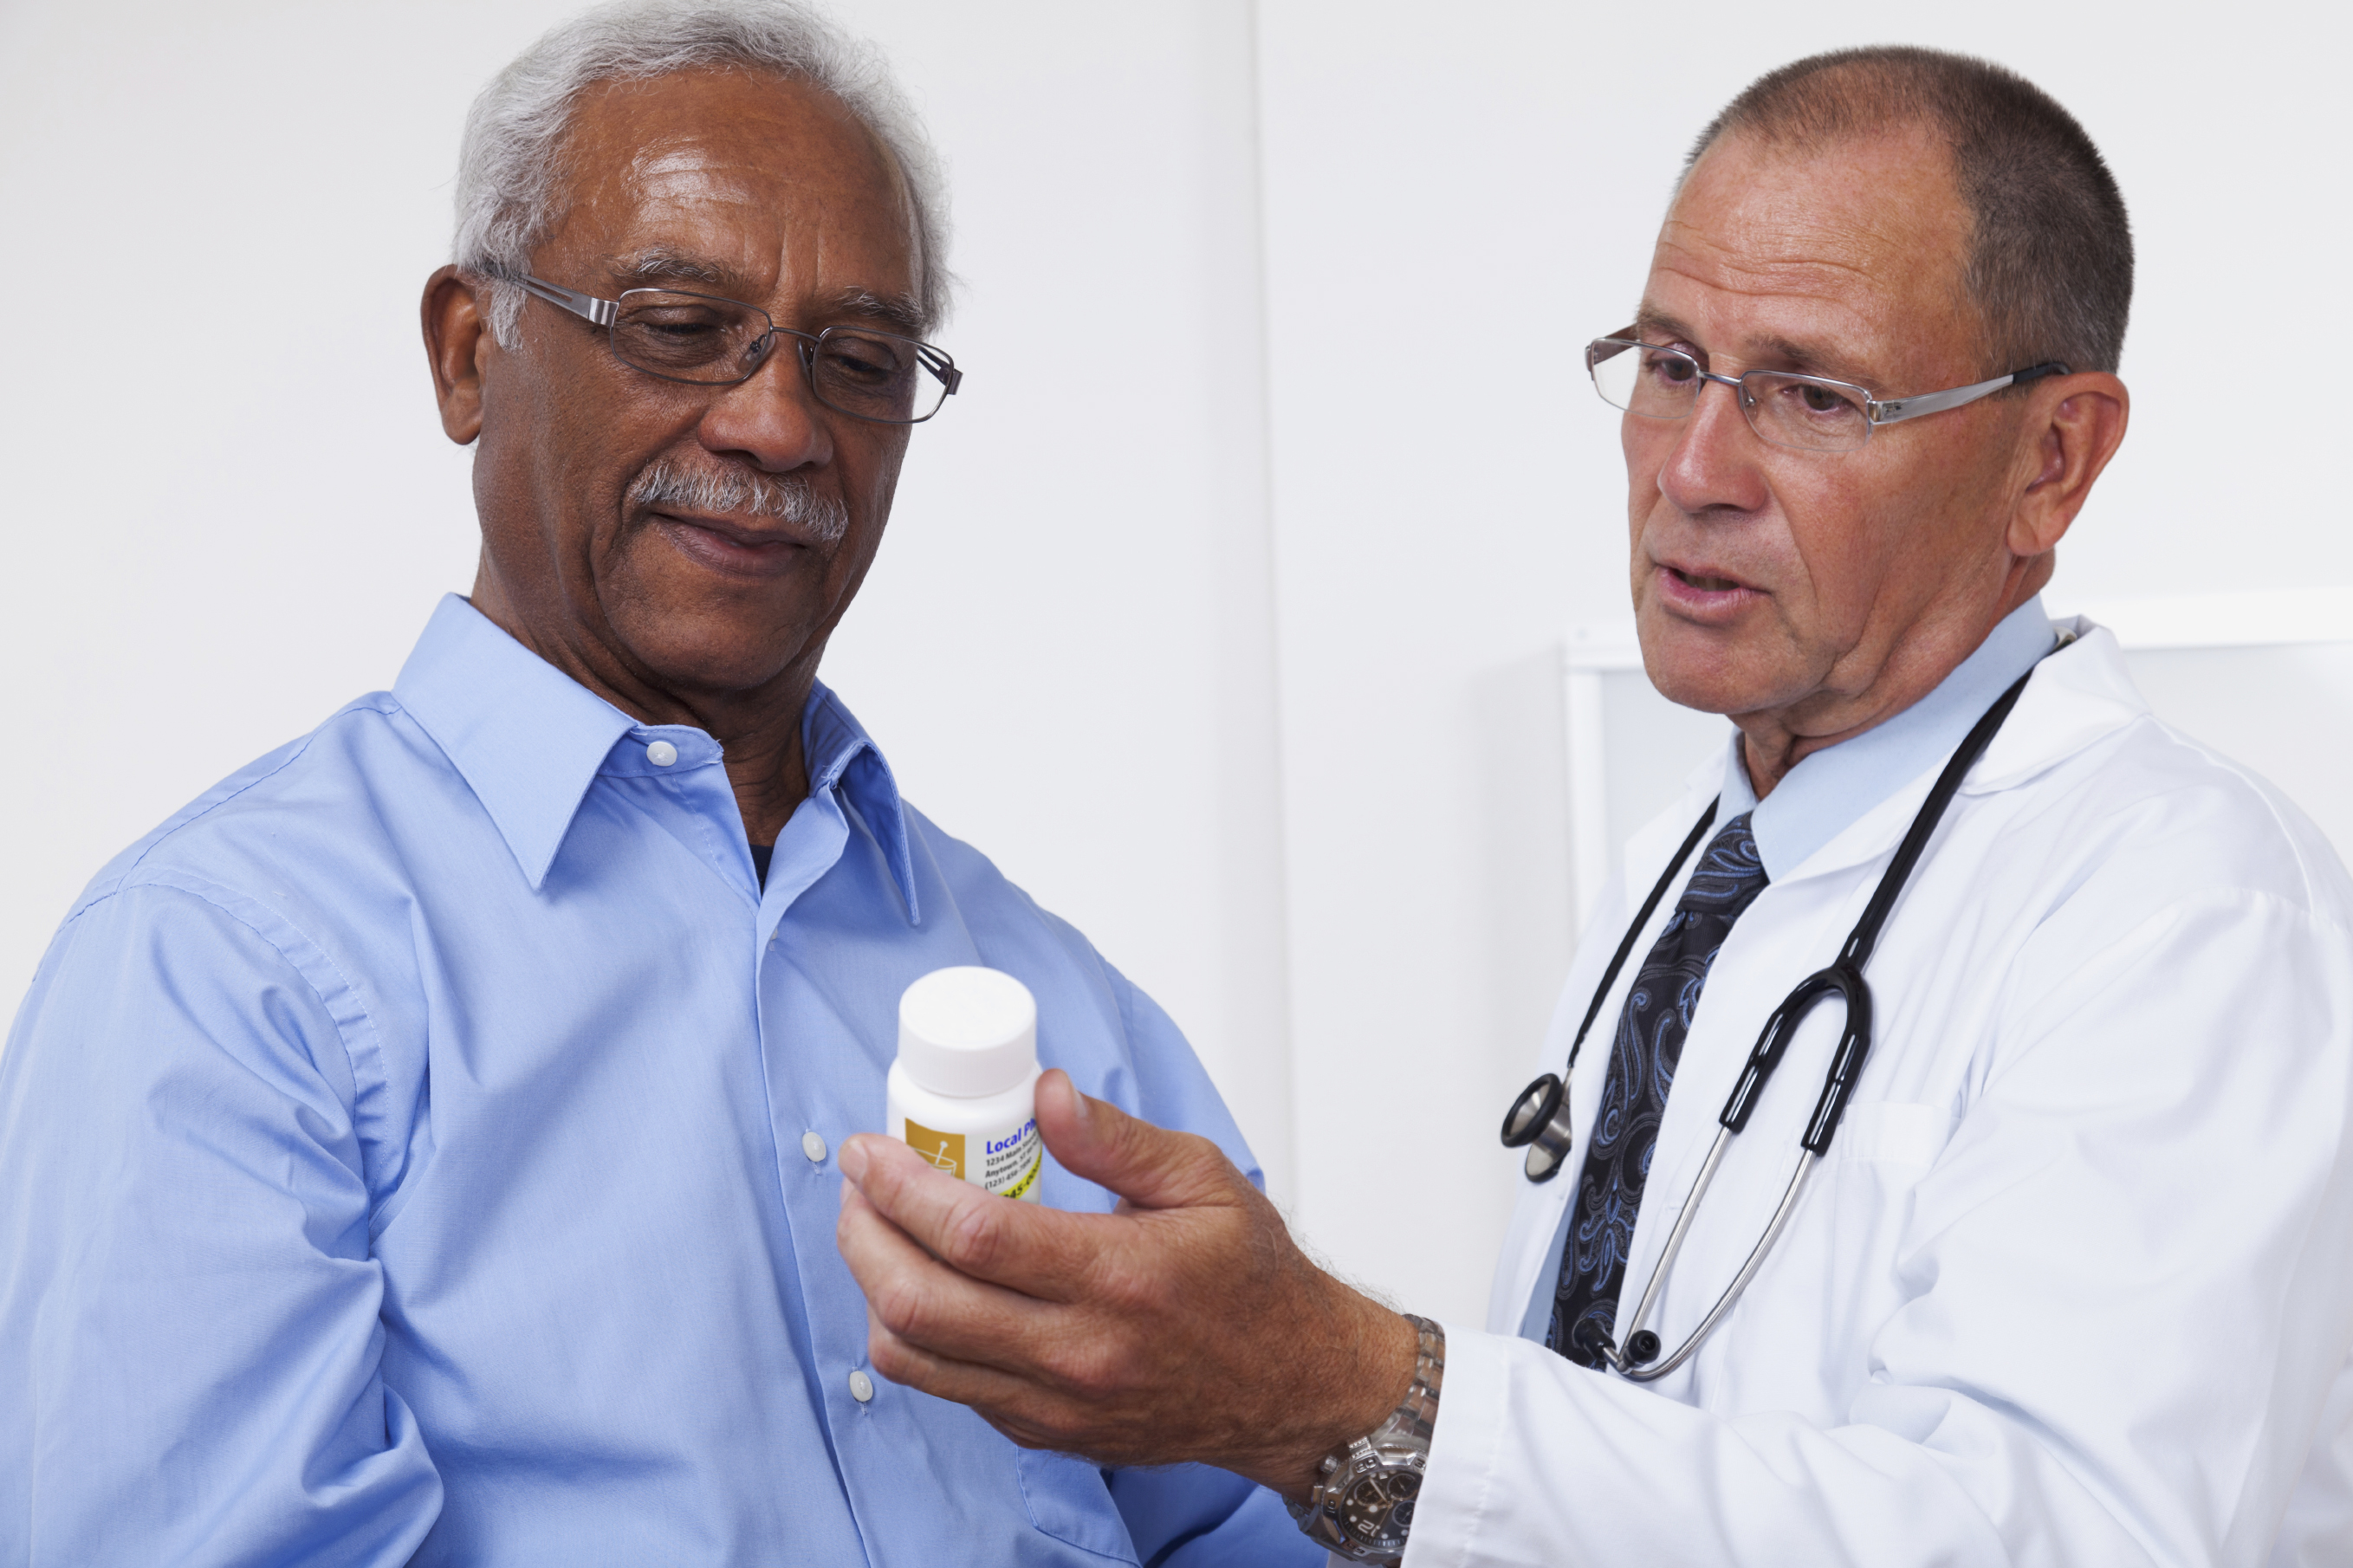 Doctor showing patient prescription bottle.